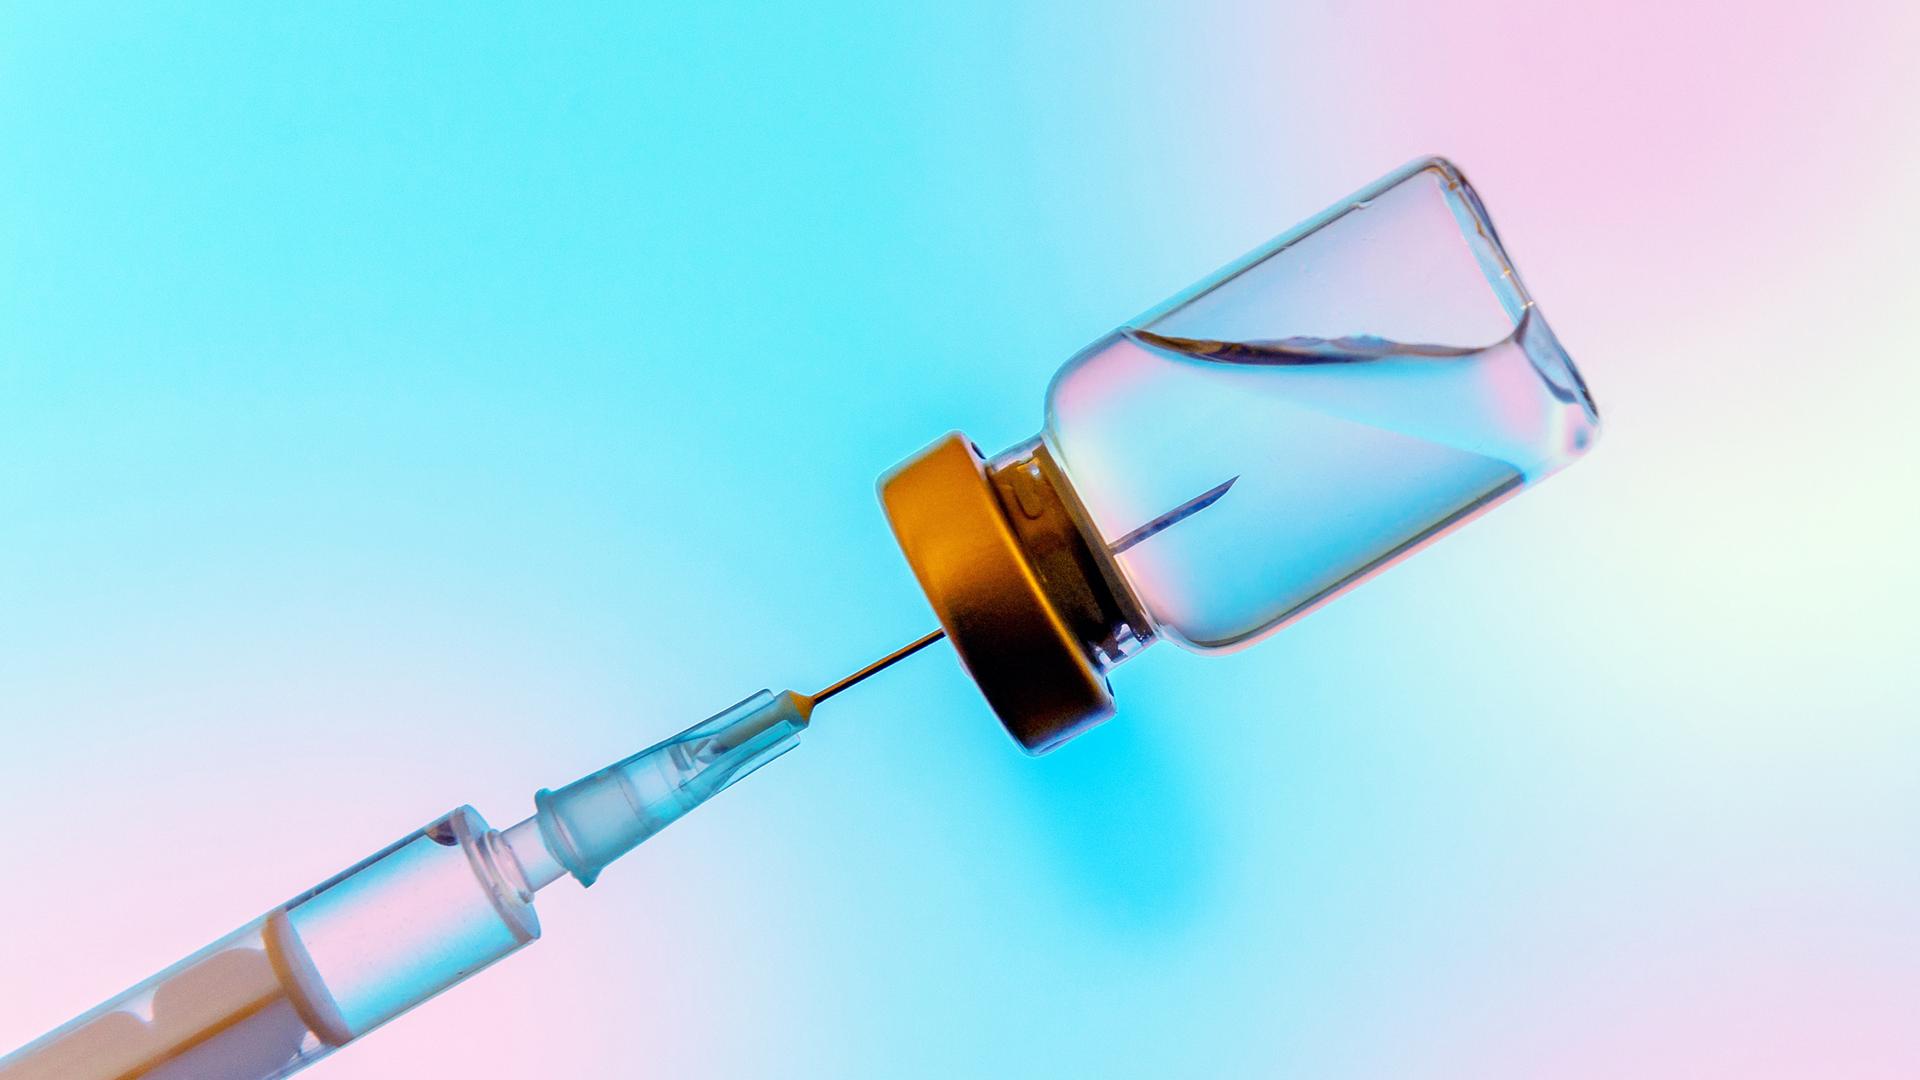 Studioaufnahme einer Spritze, die Flüssigkeit, einen Impfstoff, aus einem Gefäß zieht.